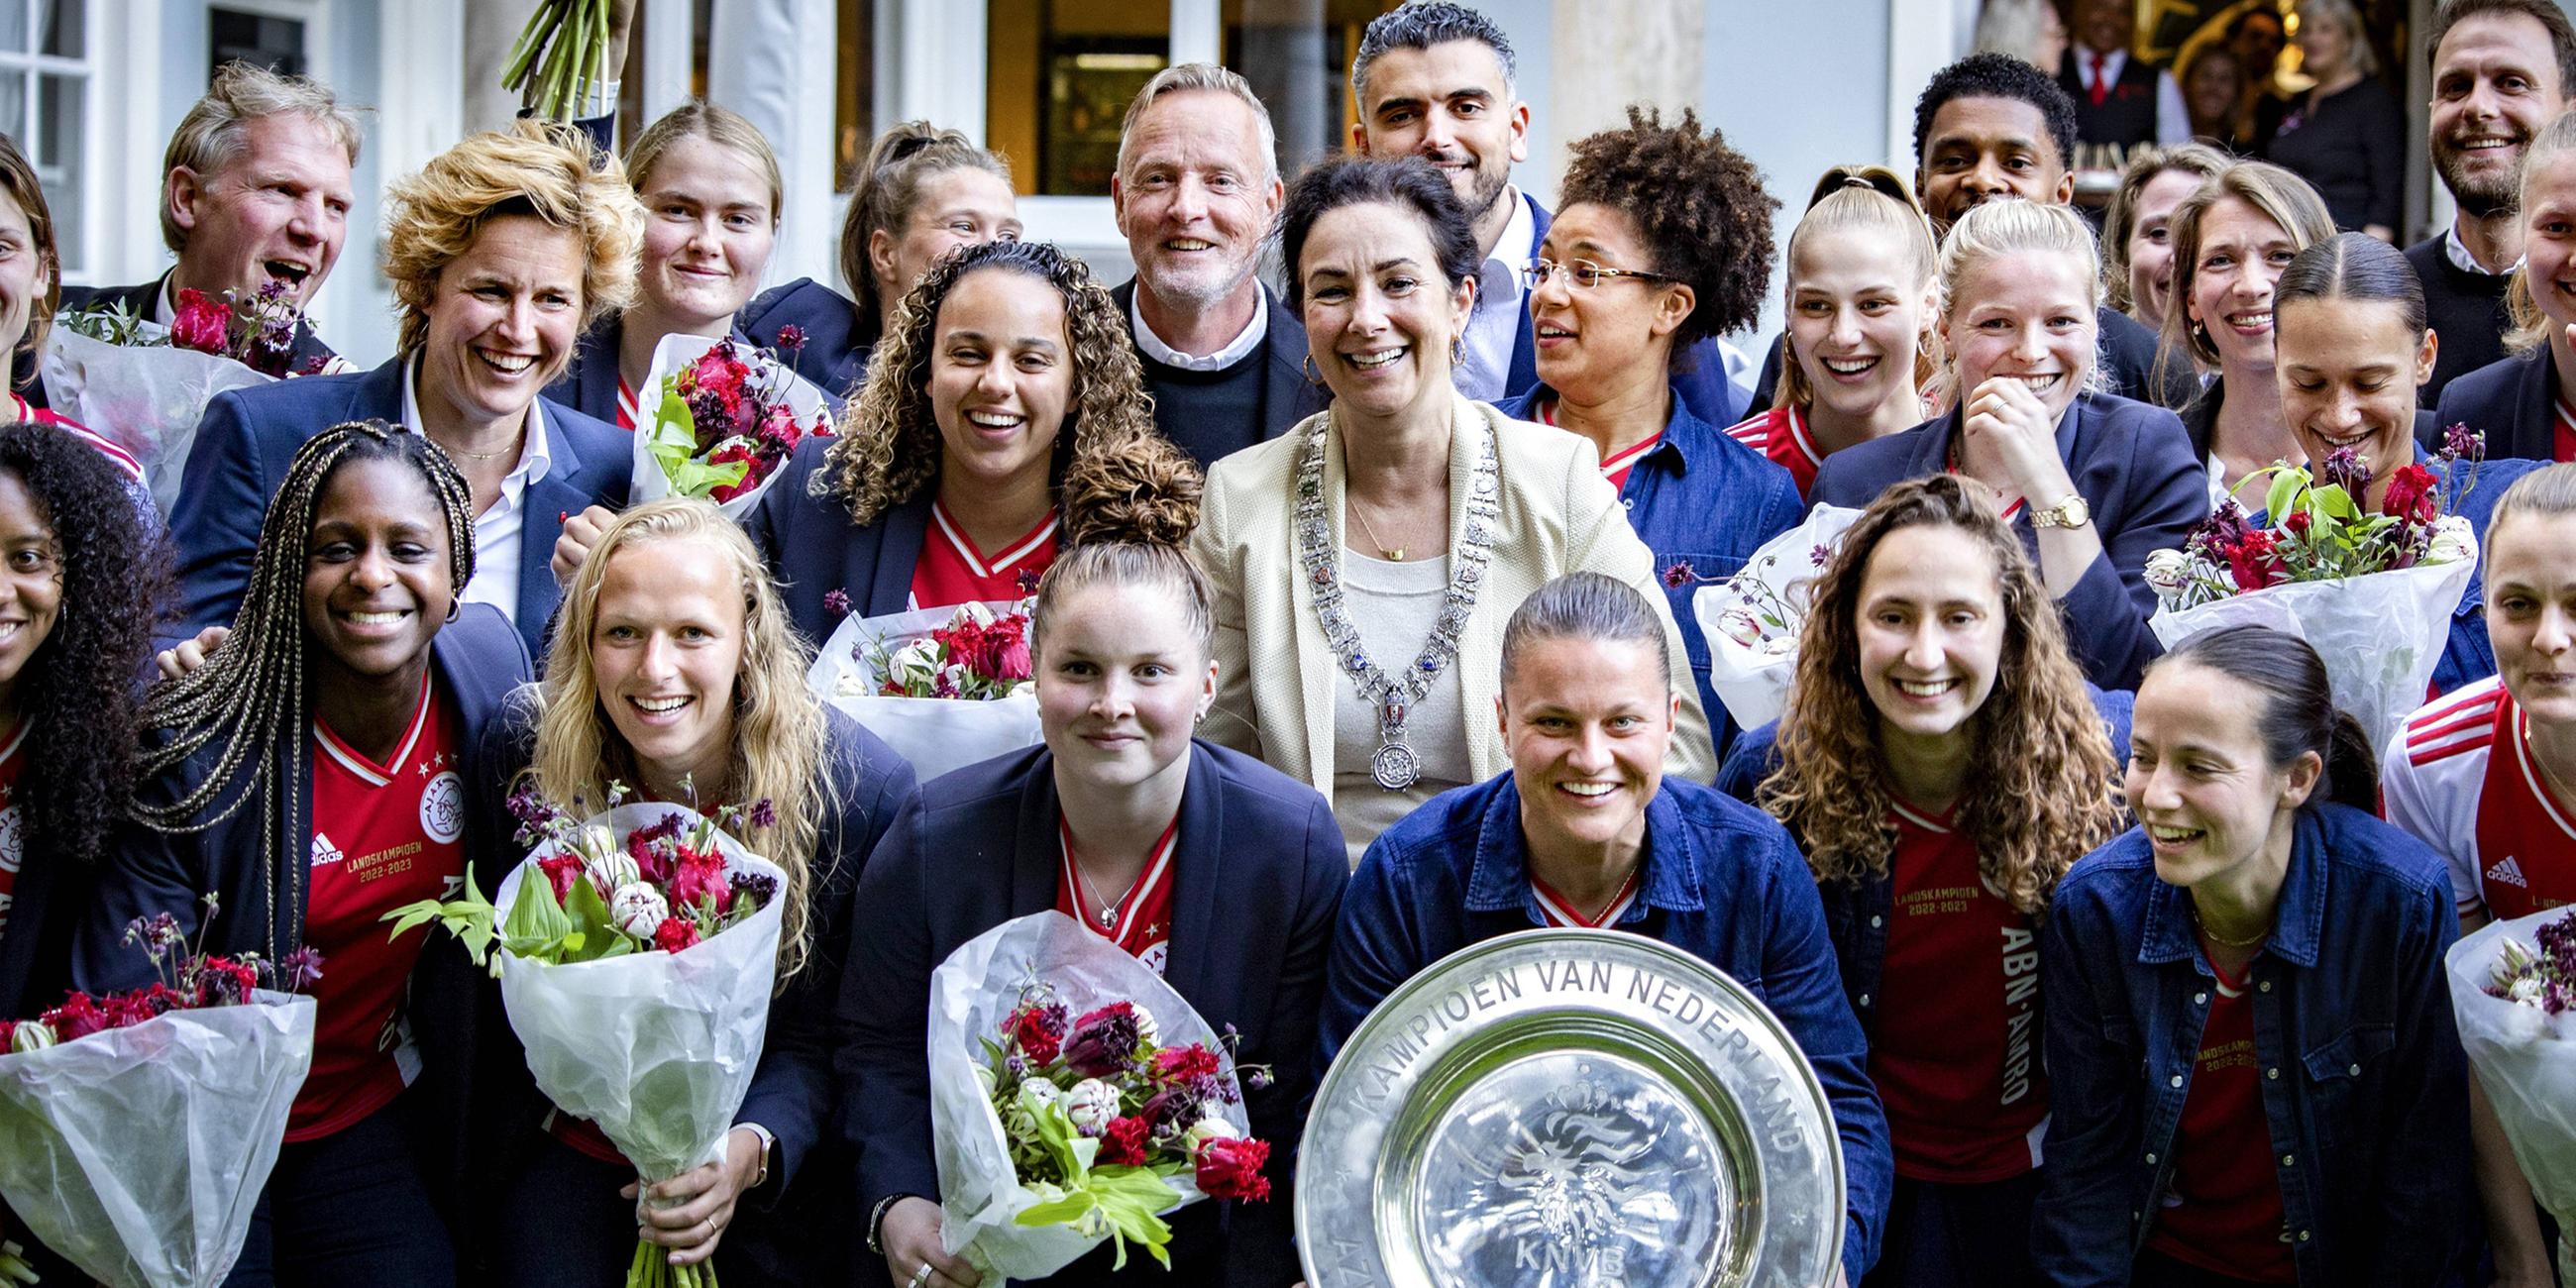 Bürgermeisterin Femke Halsema zusammen mit der Sportstadträtin Sofyan Mbarki und den Fußballspielerinnen von Ajax Amsterdam